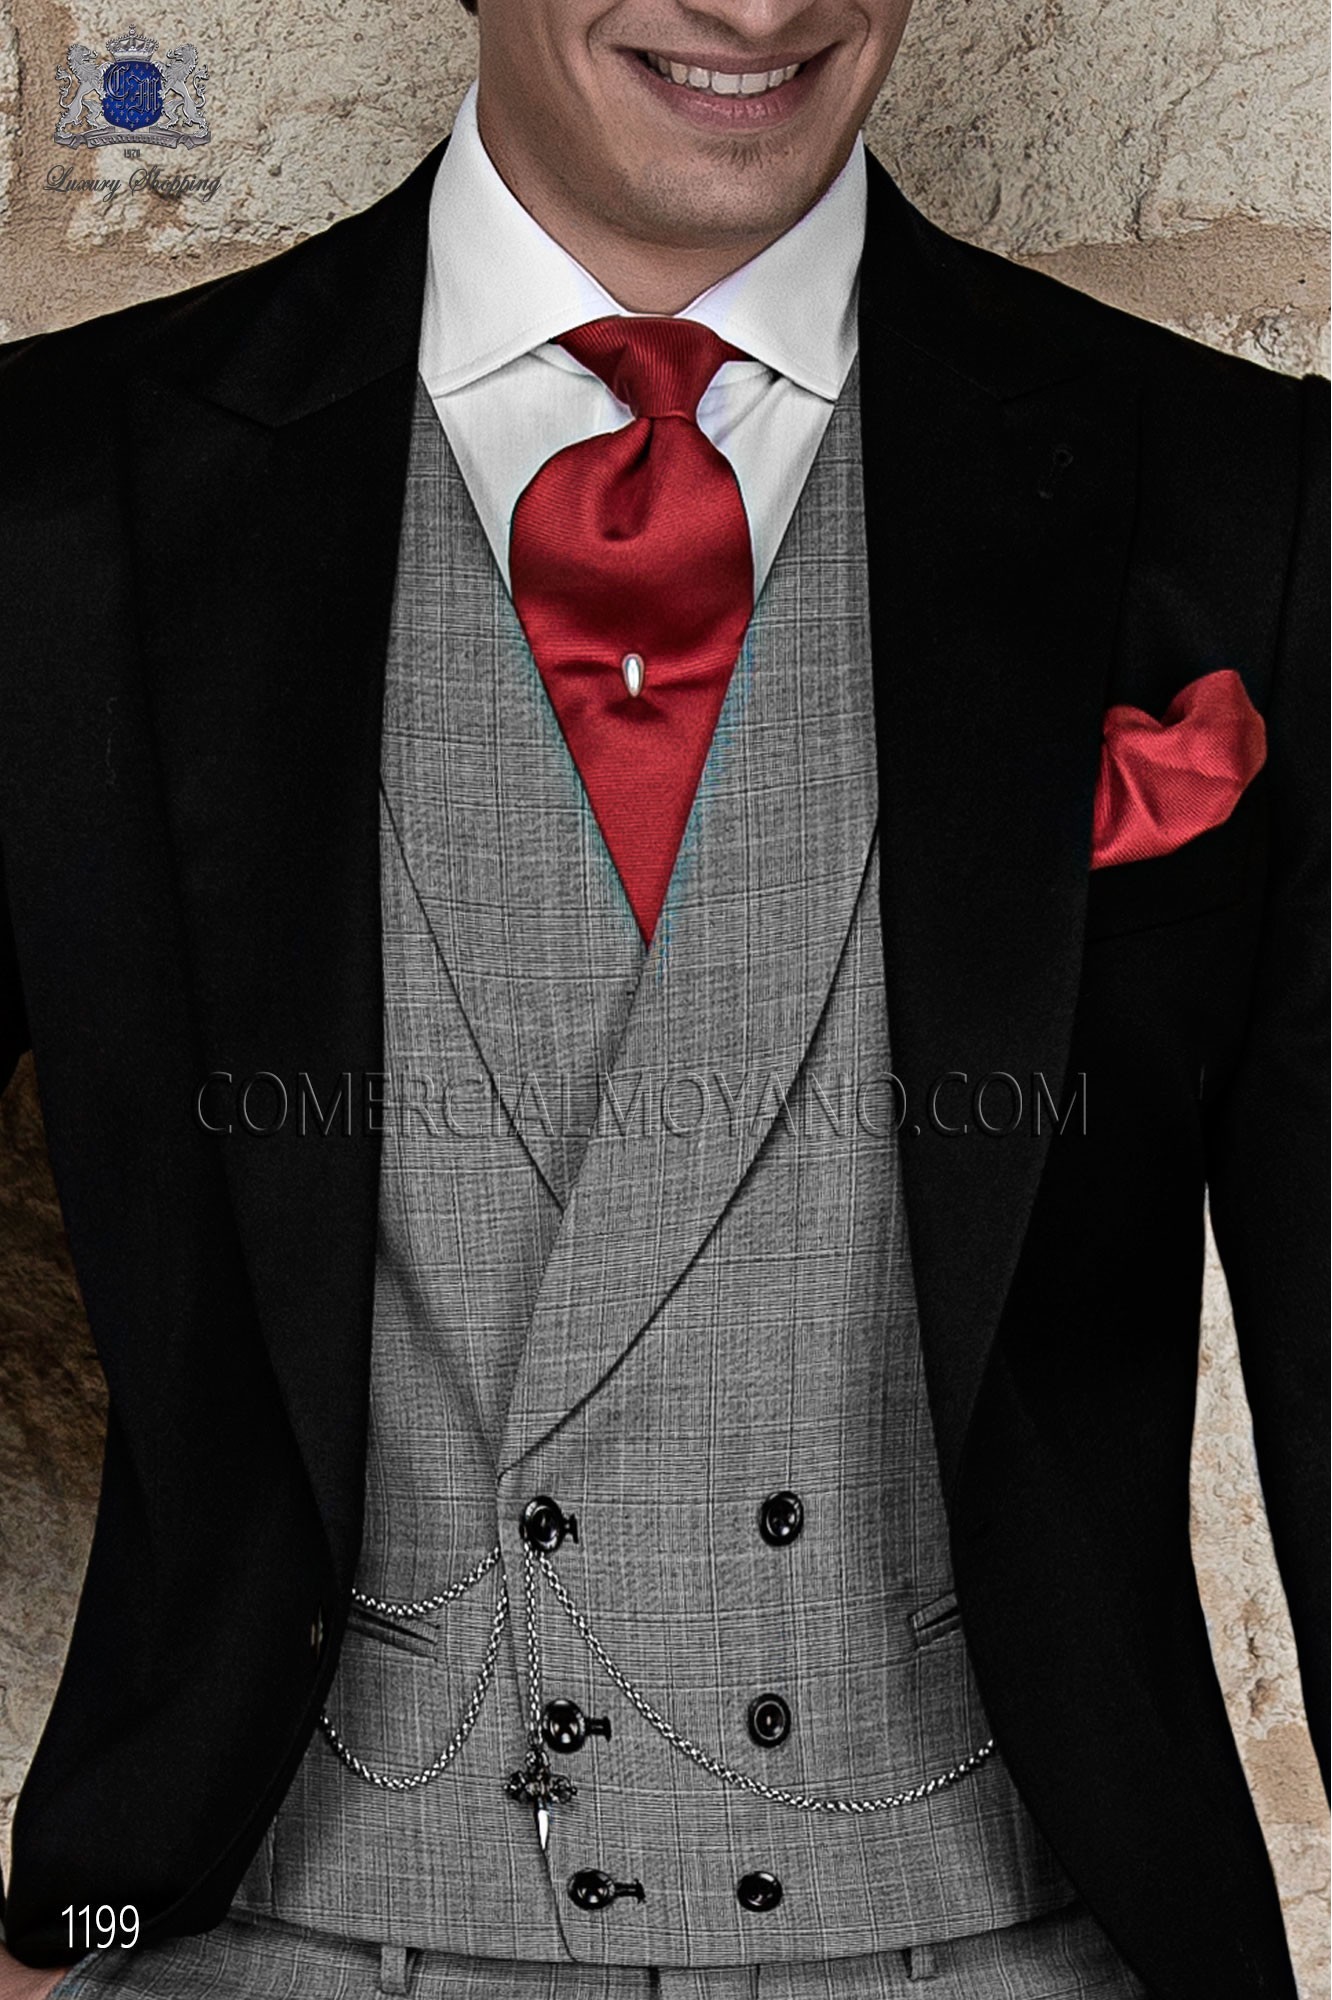 Traje Gentleman de novio negro modelo: 1199 Mario Moyano colección Gentleman